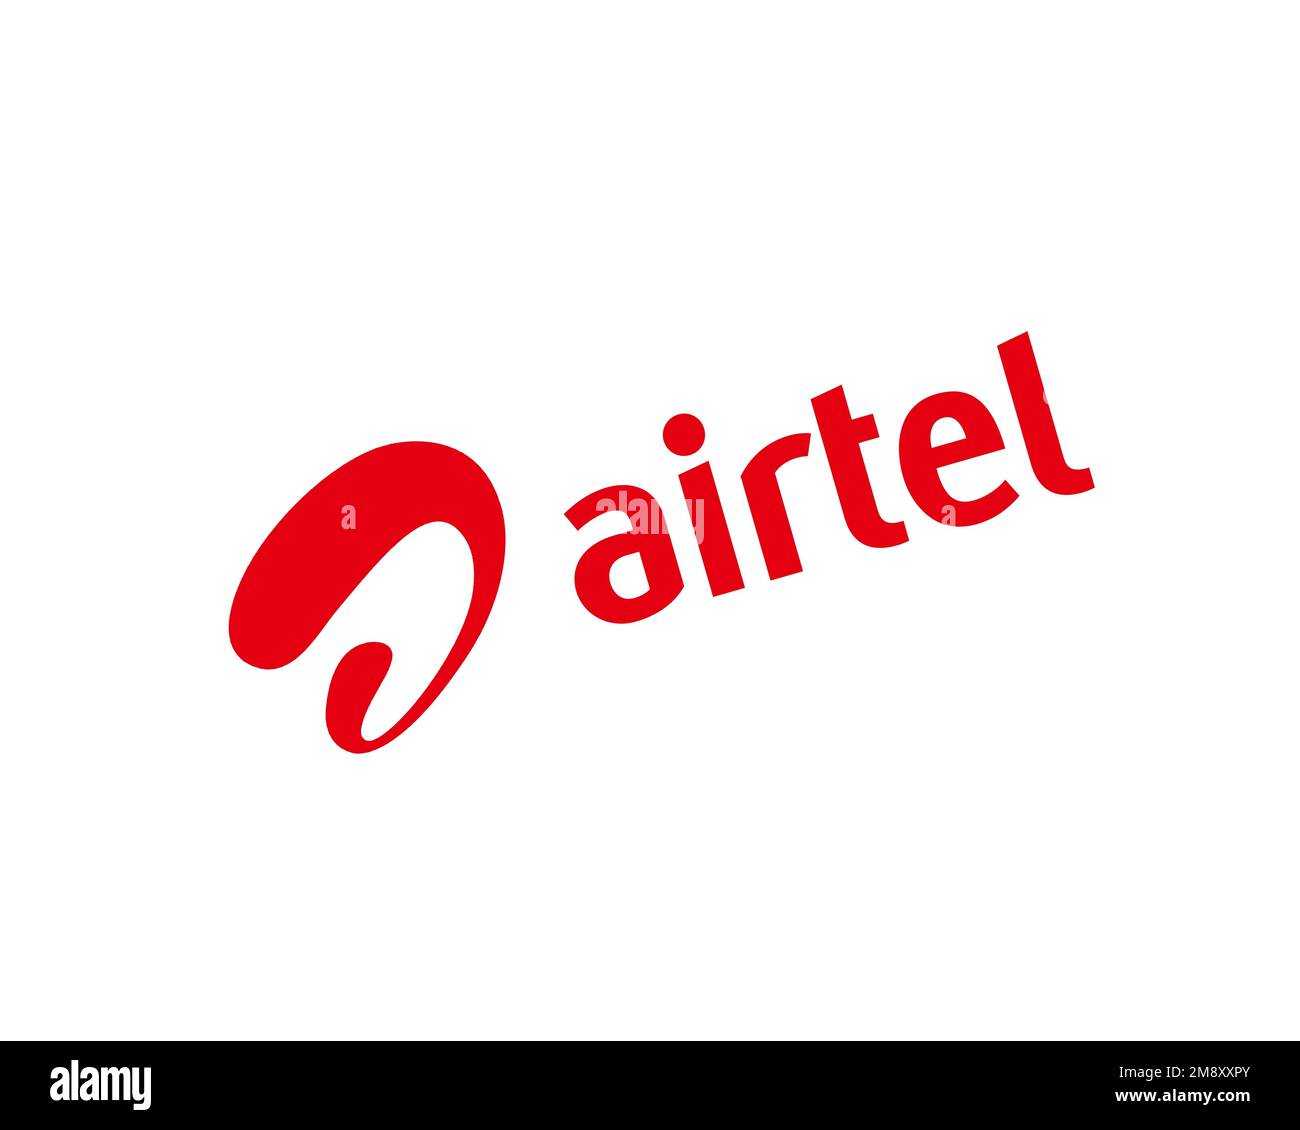 Airtel Tanzania, rotated logo, white background Stock Photo